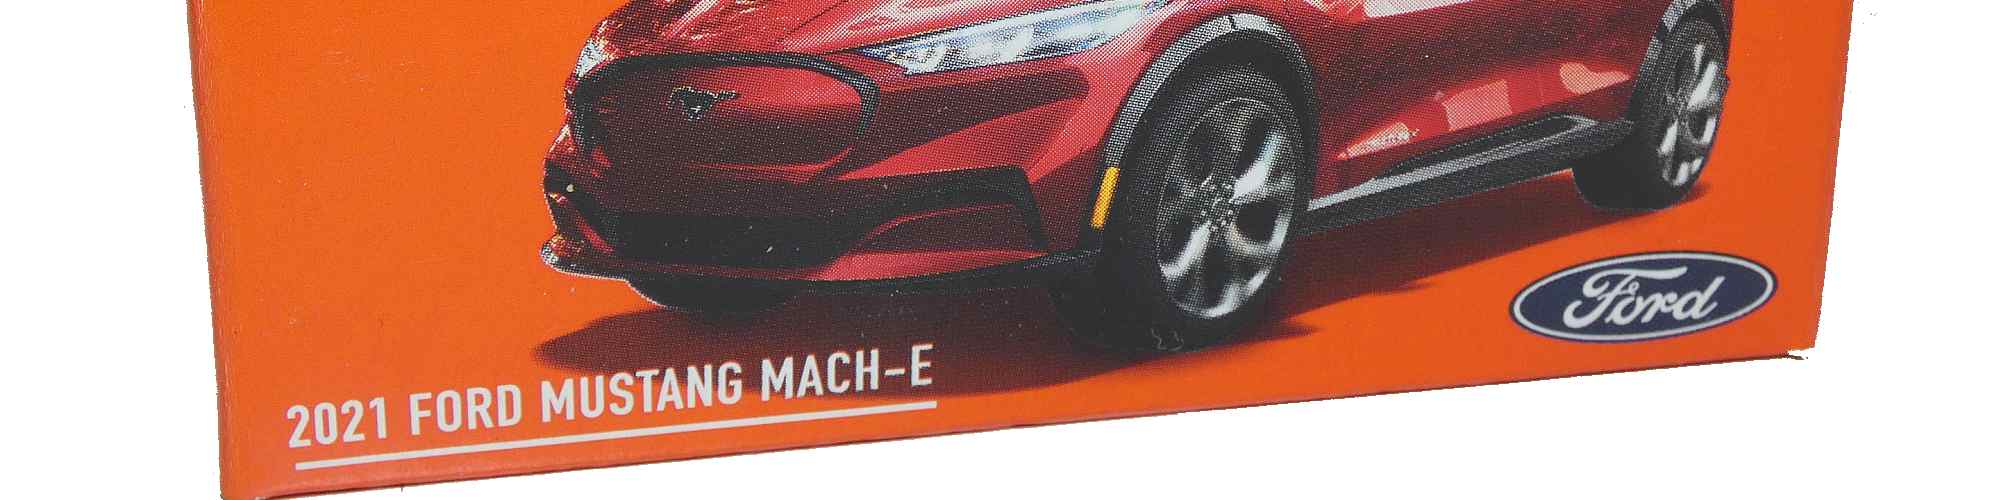 Matchbox – 2021 Ford Mustang Mach-E